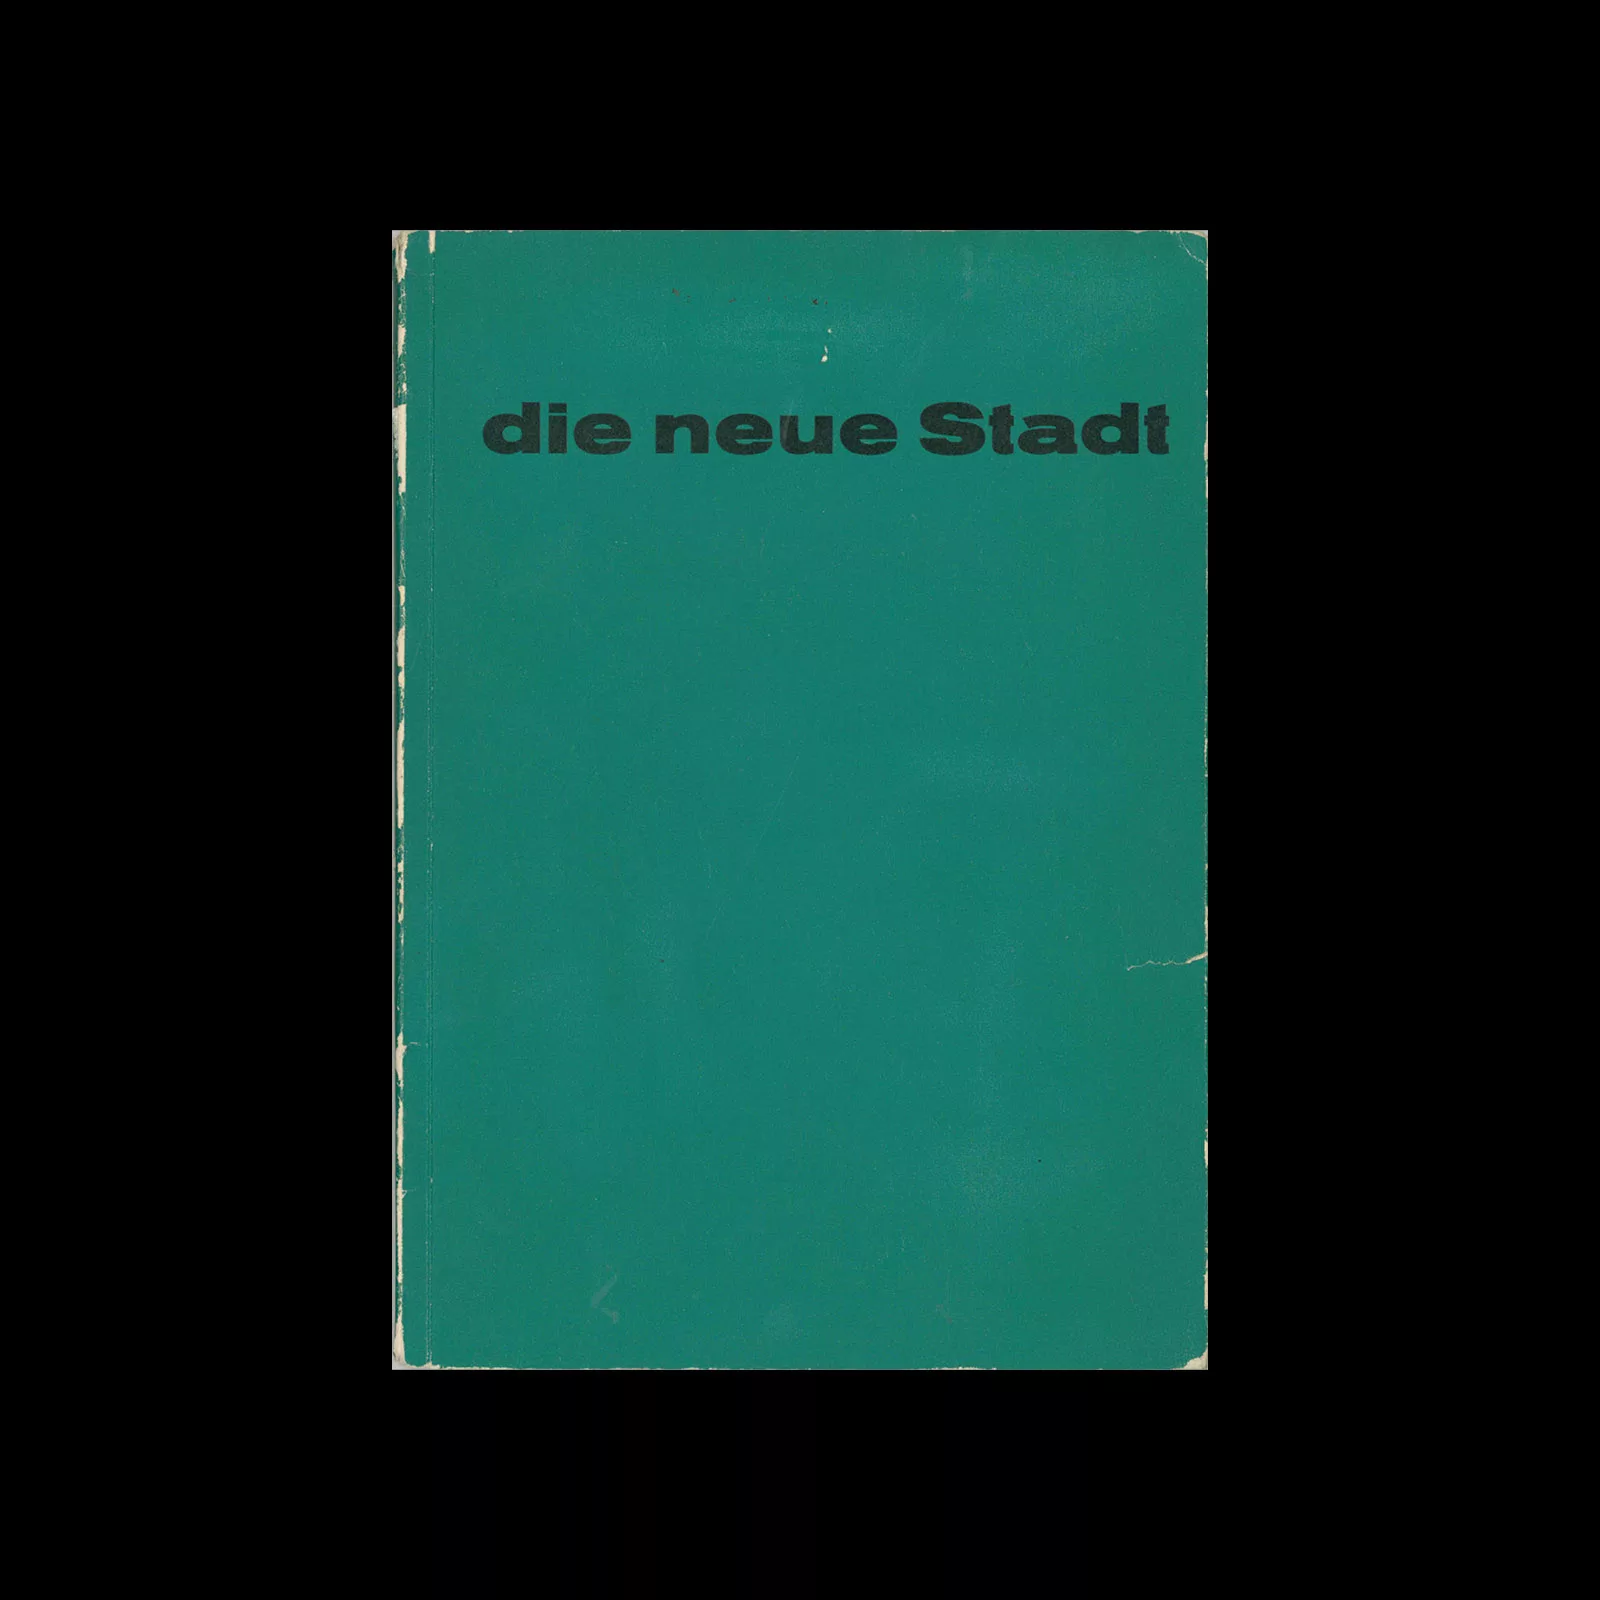 Die Neue Stadt, Verlag Felix Handschin, 1956. Designed by Karl Gerstner